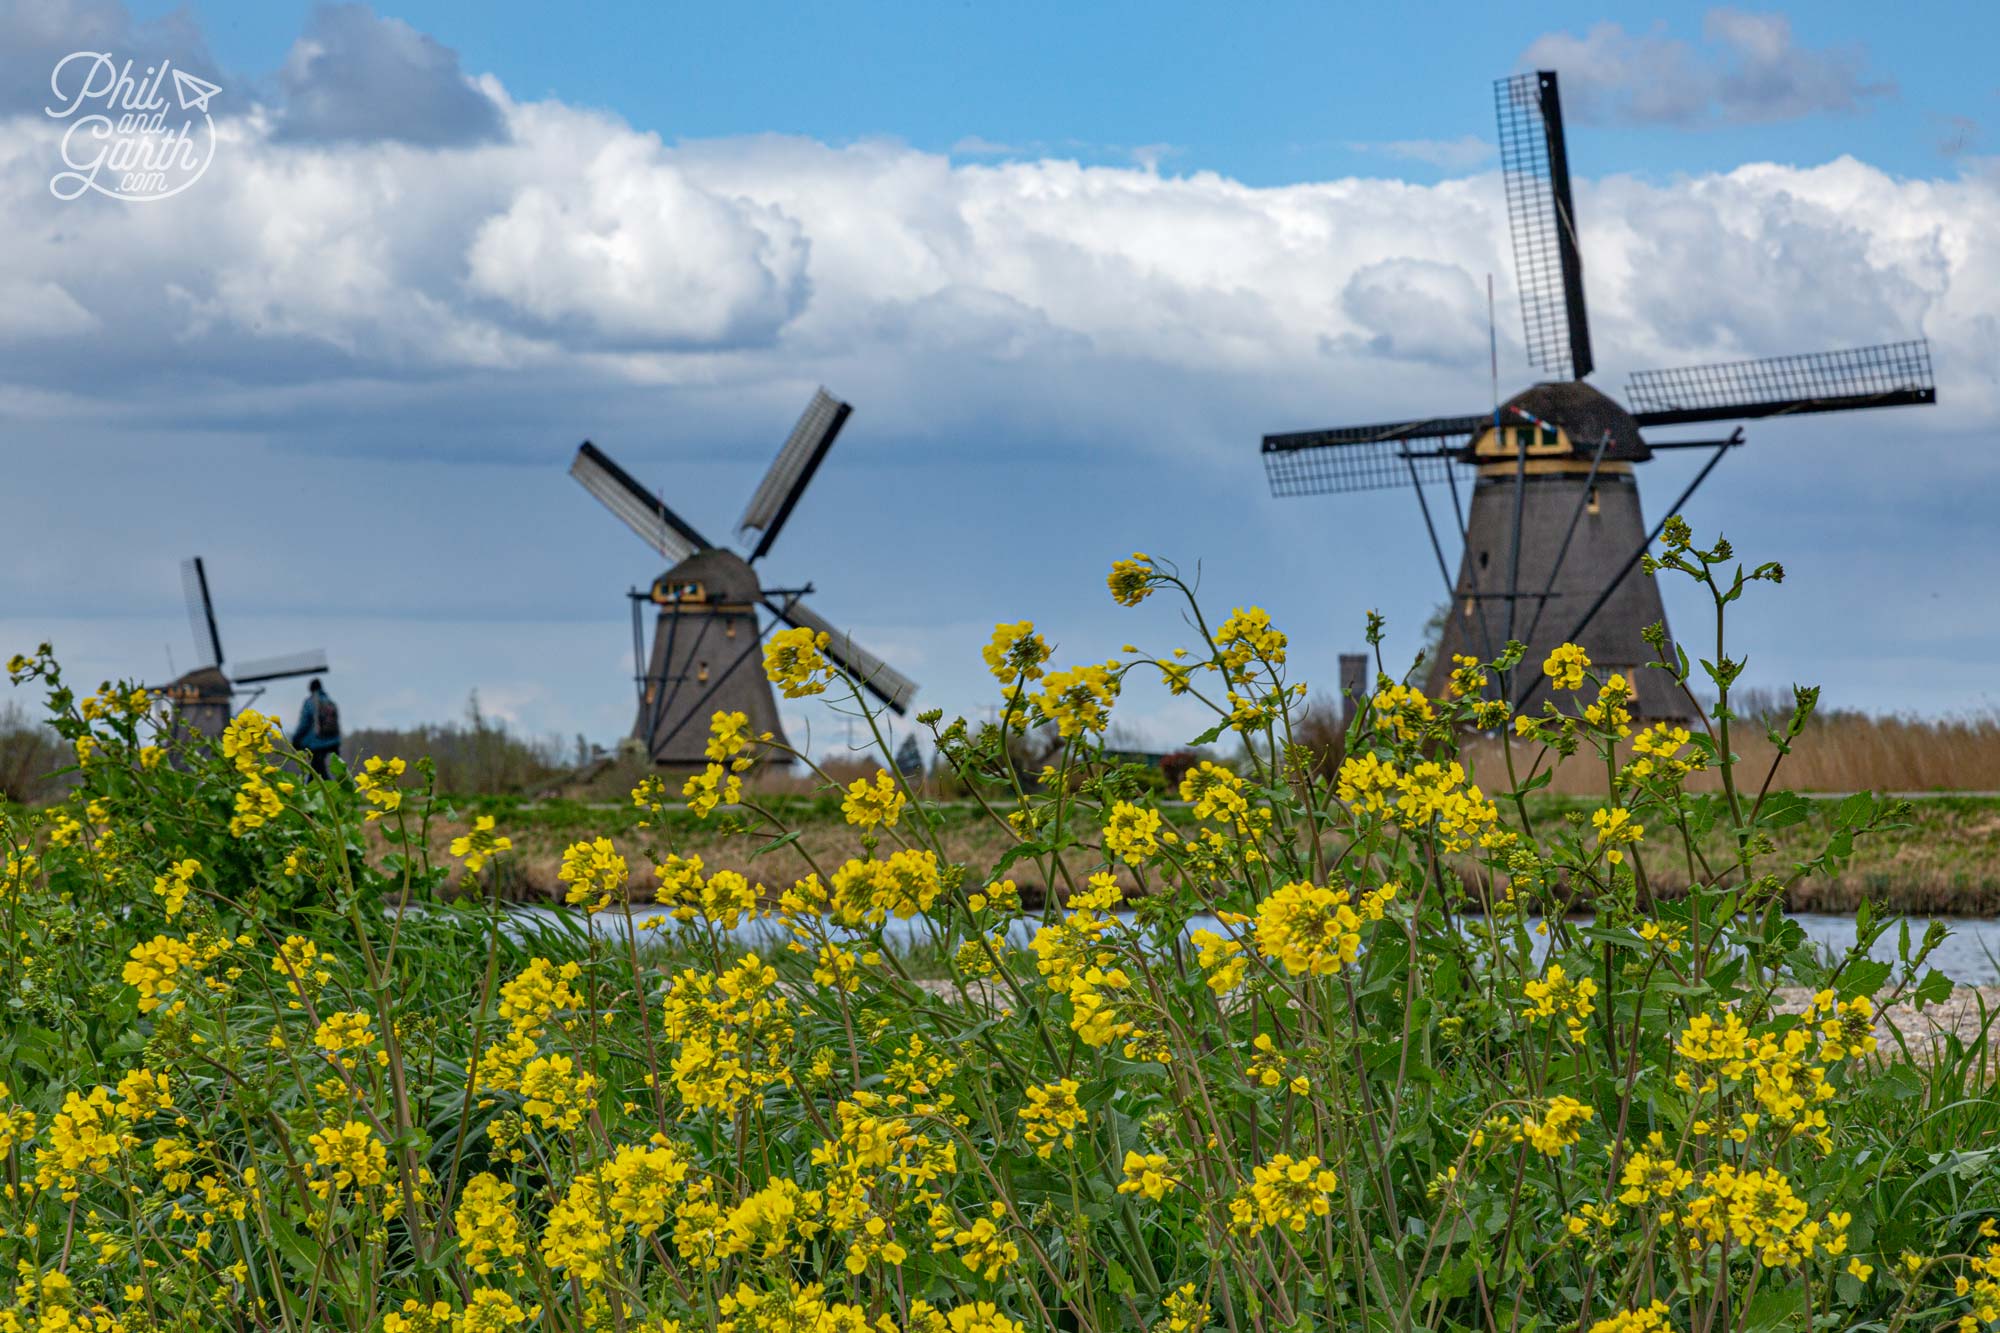 Kinderdijk is a UNESCO World Heritage Site